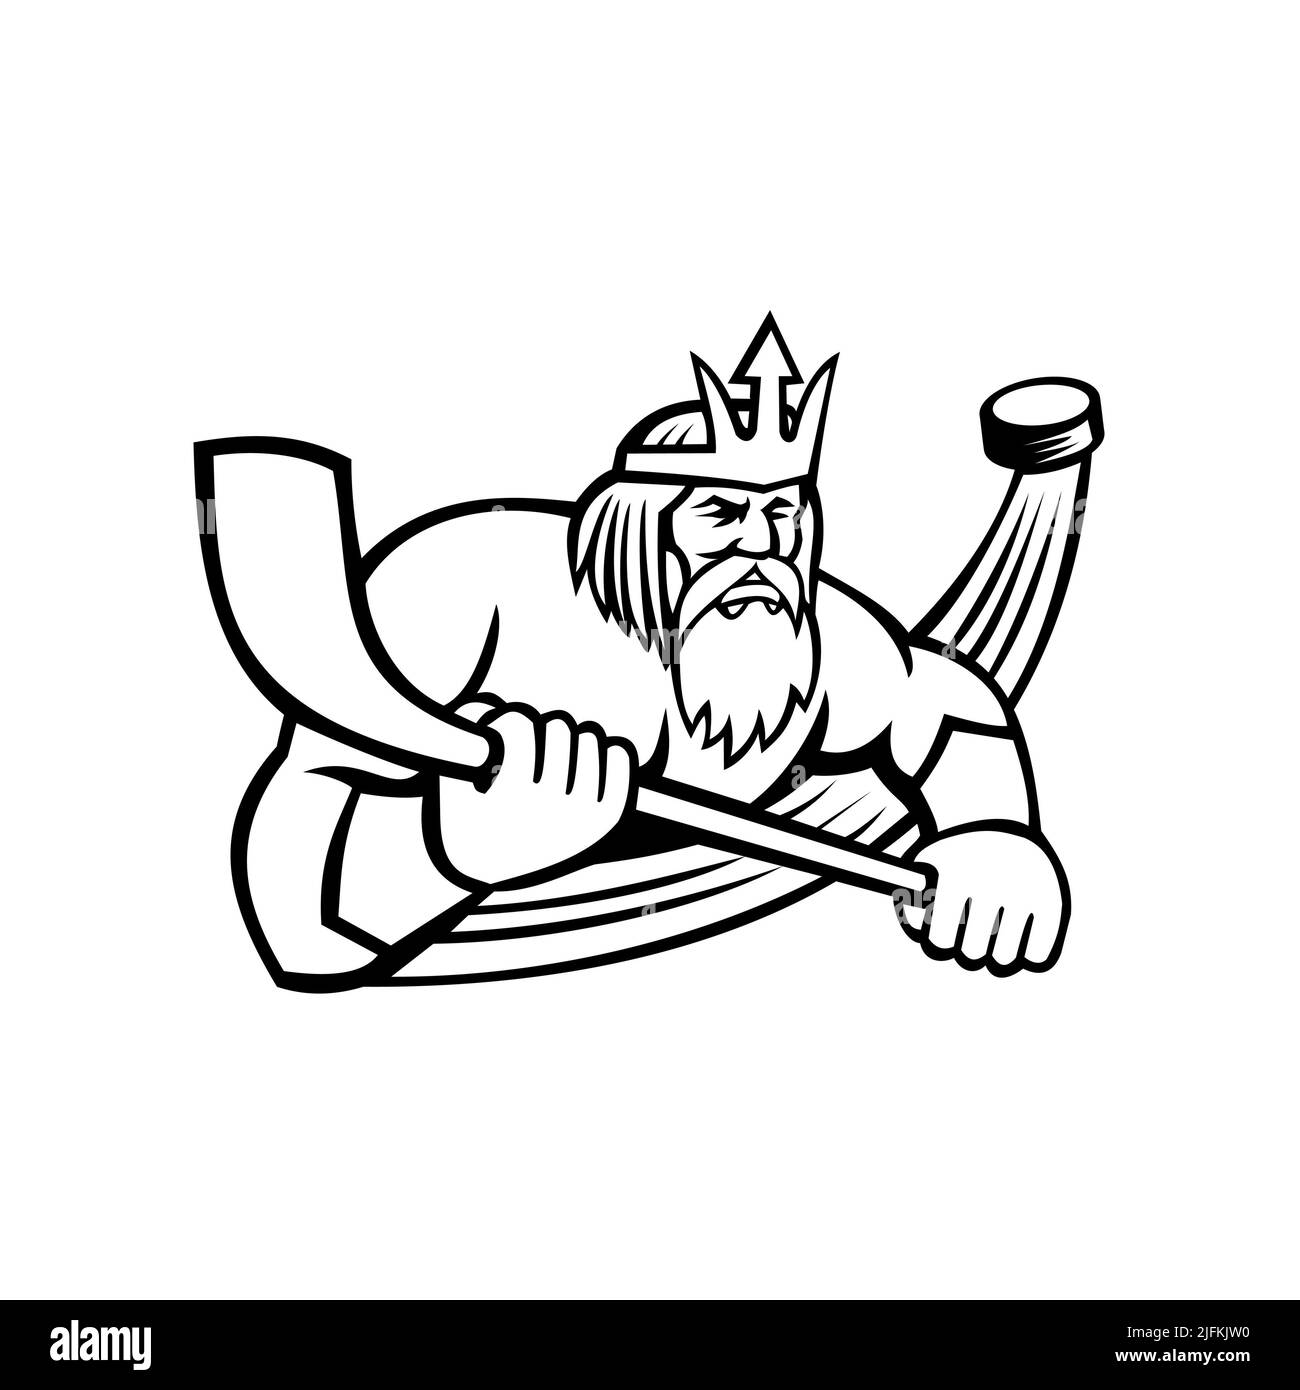 Ilustración de la mascota blanca y negra de Poseidón o Neptuno, dios del Mar en la mitología griega y romana sosteniendo un palo de hockey sobre hielo con el disco visto Foto de stock